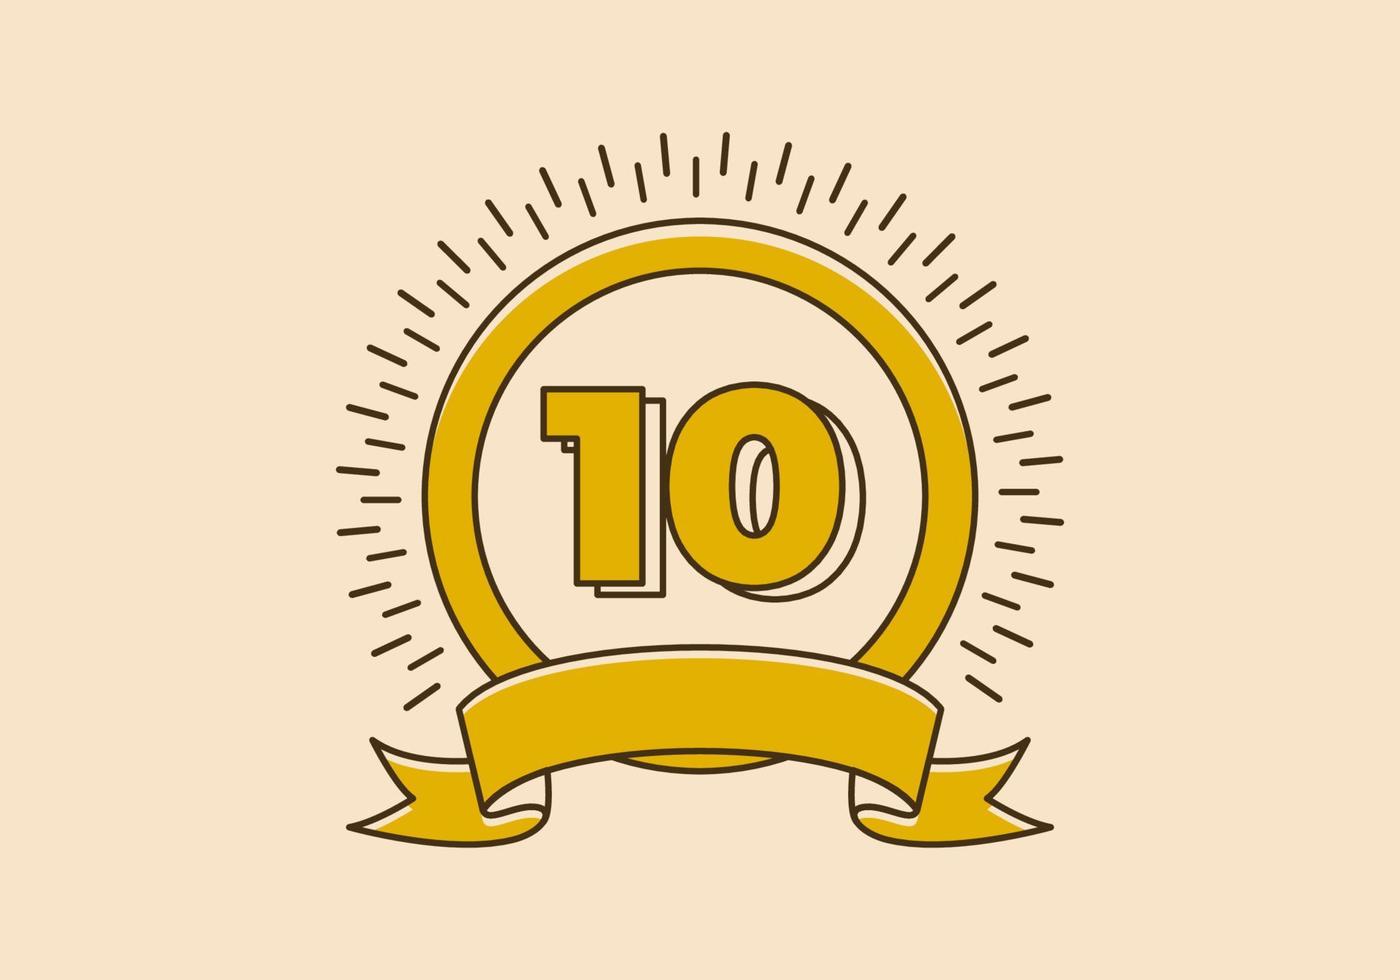 Vintage gelbes Kreisabzeichen mit der Nummer 10 darauf vektor